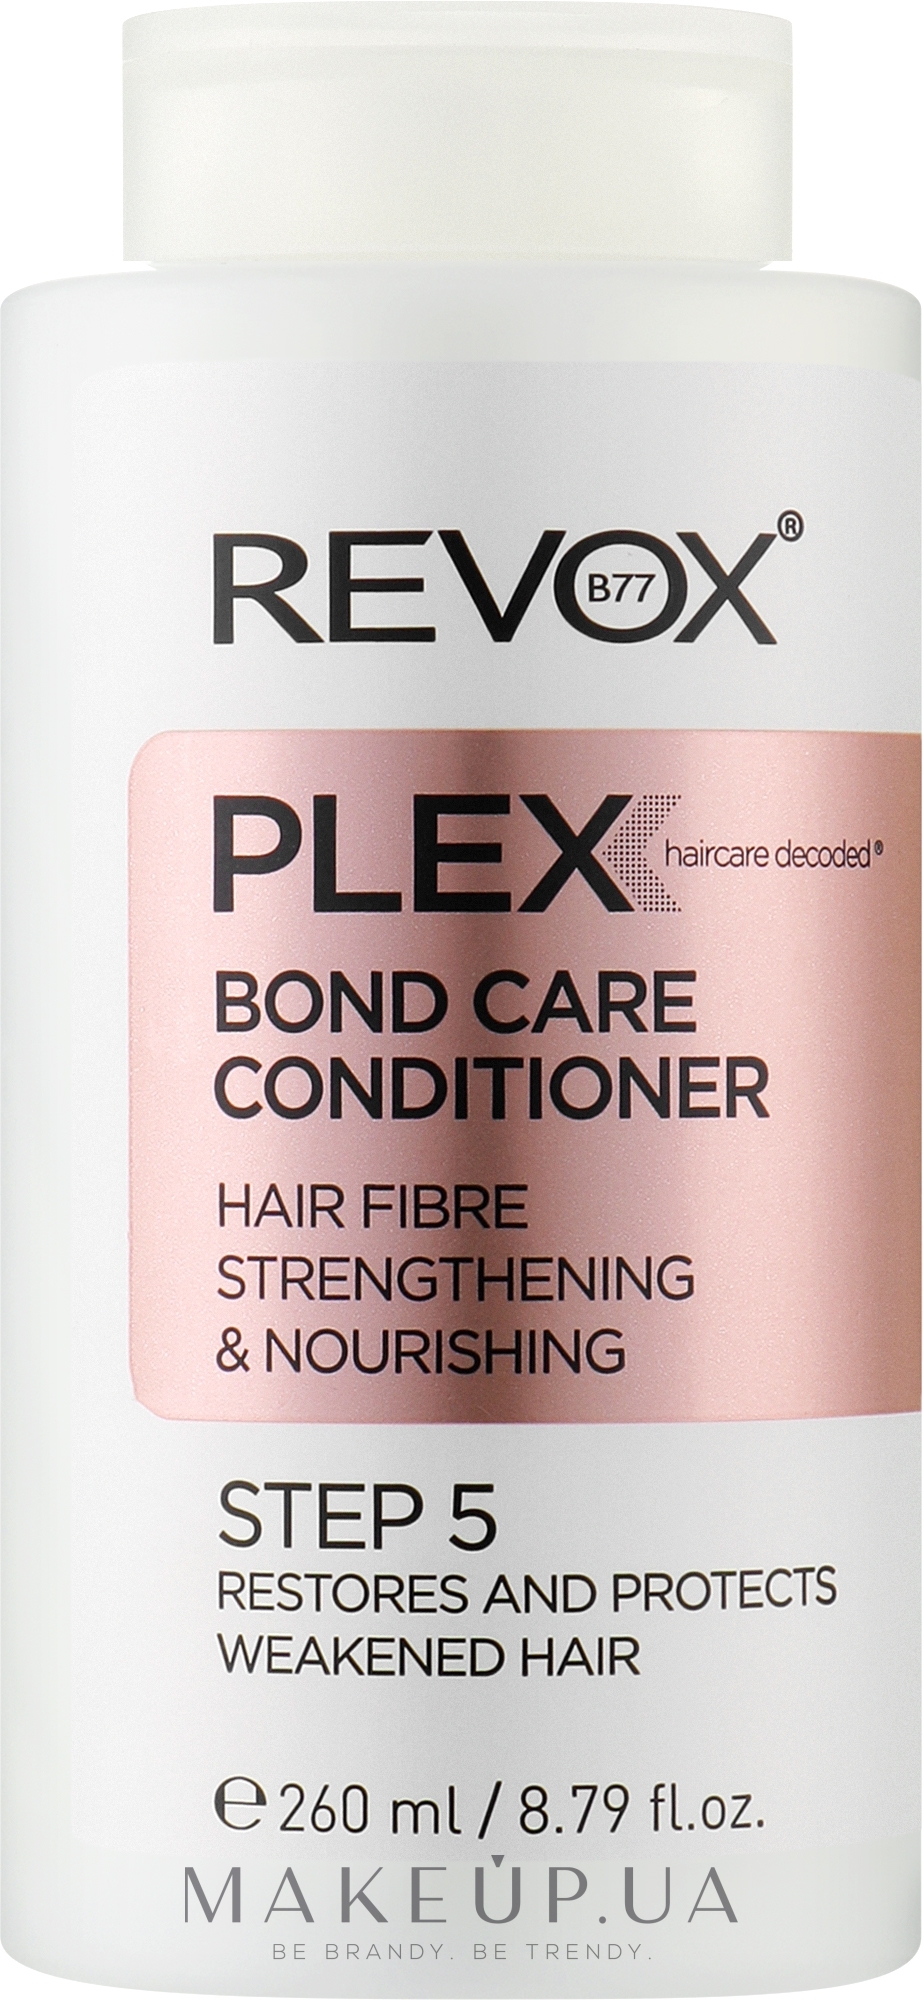 Кондиціонер для живлення і зміцнення волосся, крок 5 - Revox B77 Plex Bond Care Conditioner STEP 5 — фото 260ml